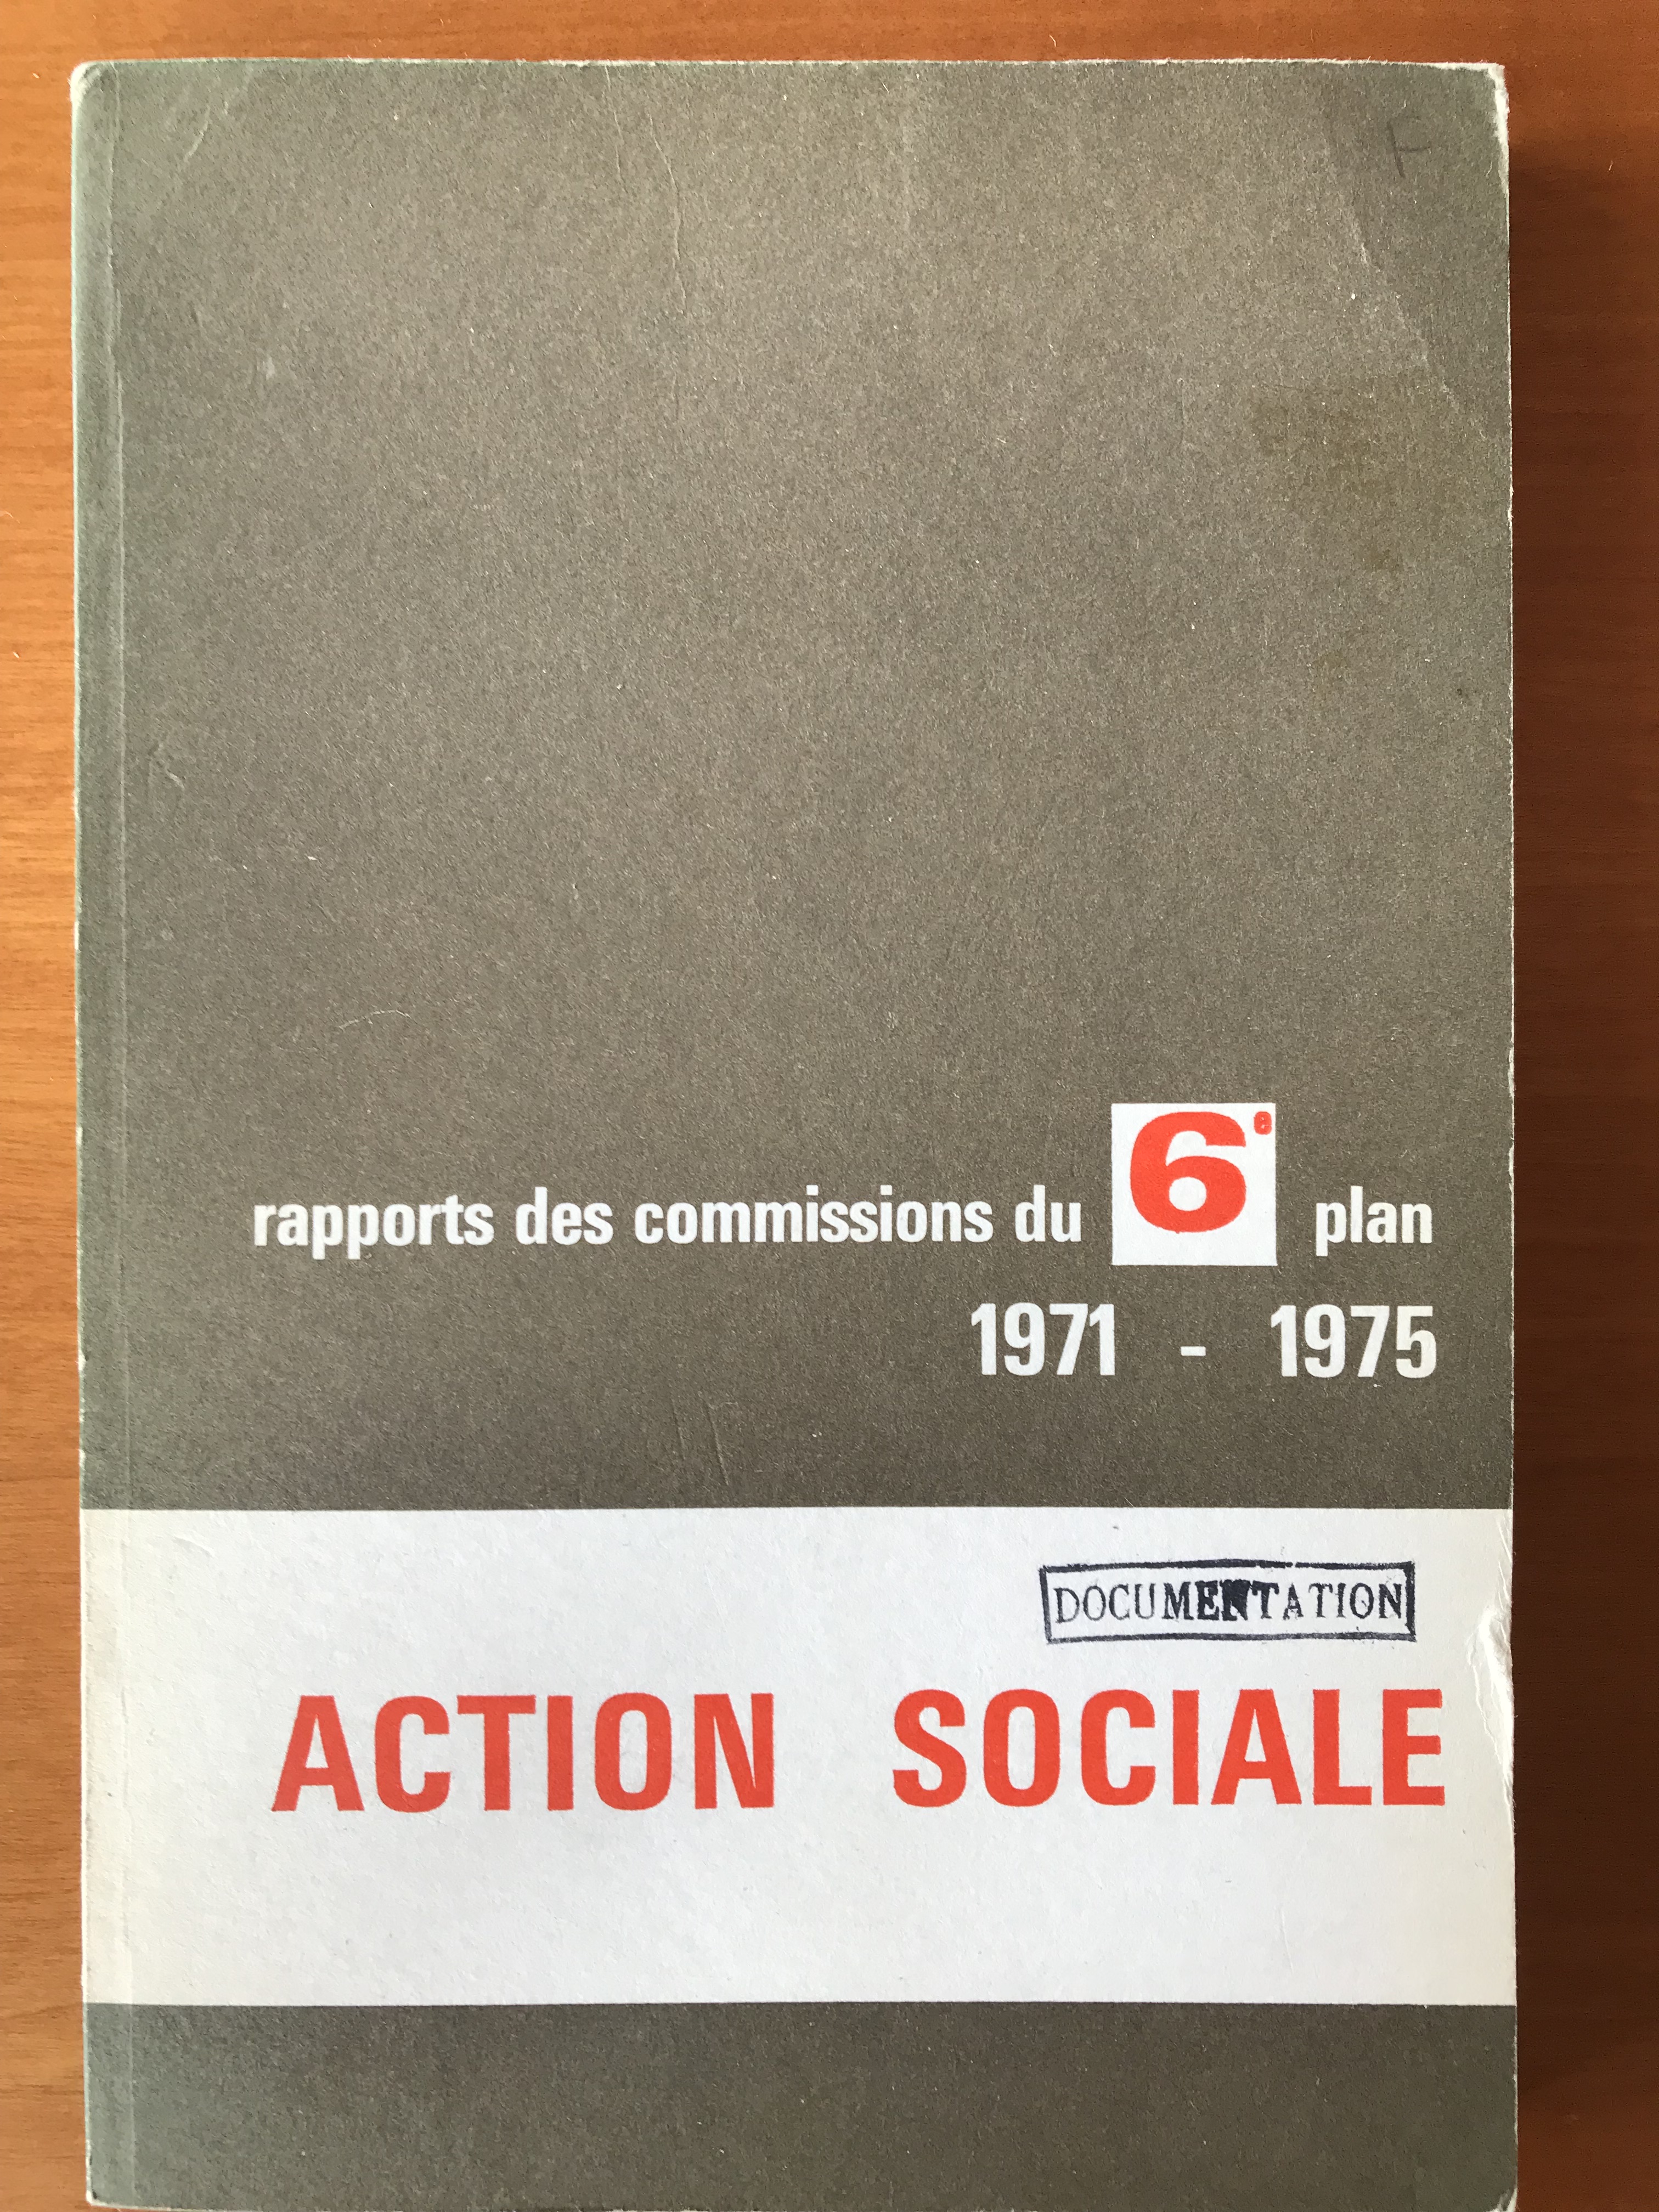 Action sociale - Rapports des commissions du 6è plan 1971-1975